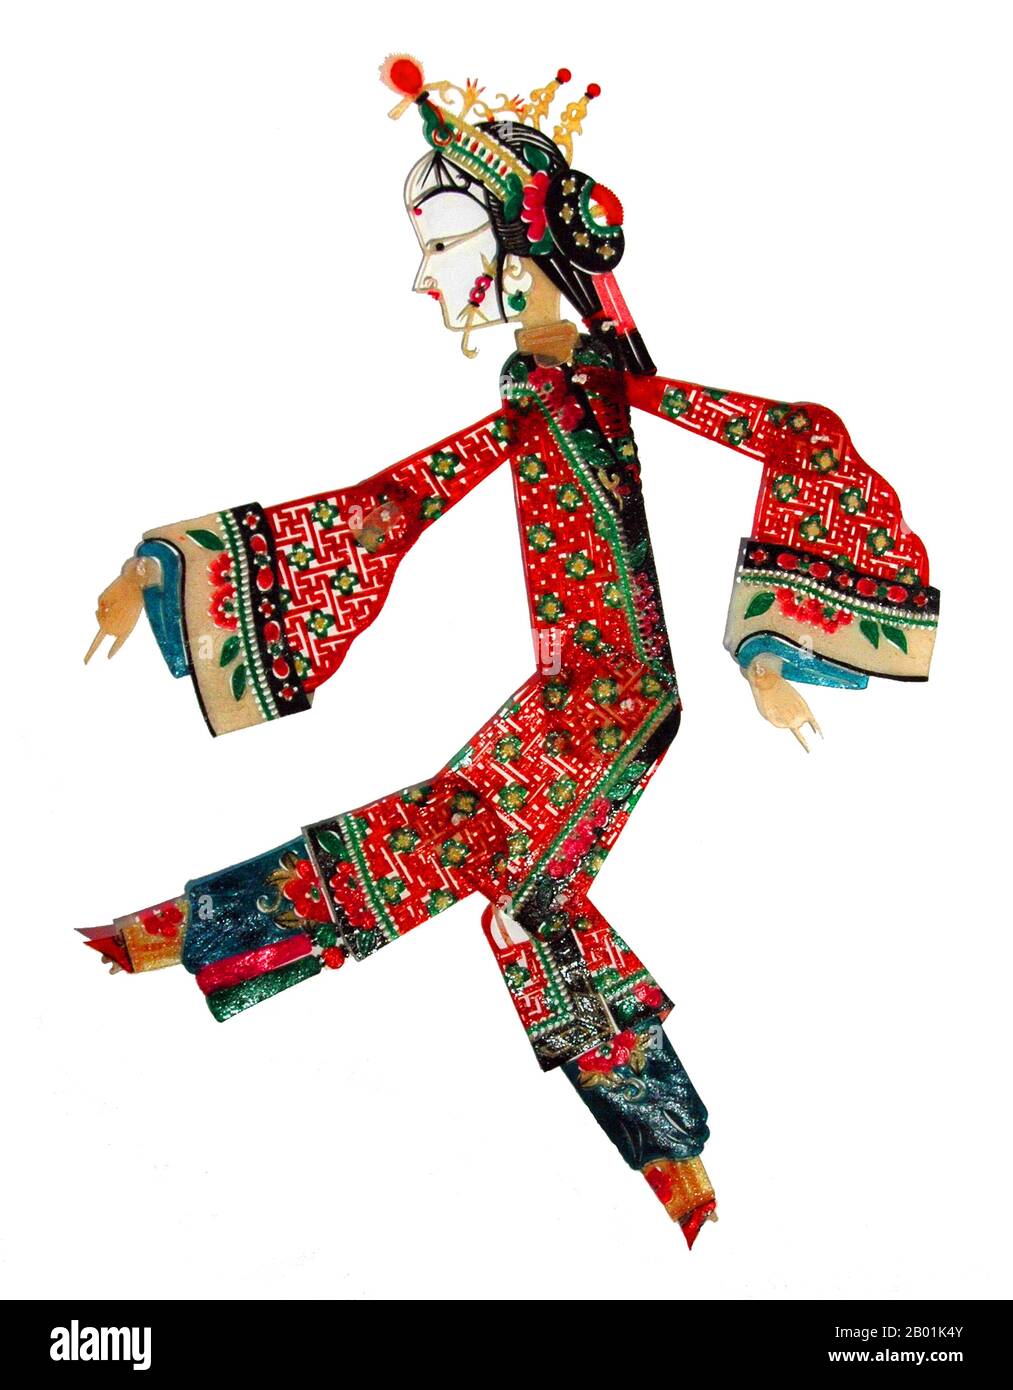 China: Weibliche Schattenpuppe aus Luoshan, Provinz Henan, 20. Jahrhundert. Schattenspiel (chinesisch 皮影戏, pí yĭng xì) oder Schattenpuppe ist eine alte Form des Erzählens und der Unterhaltung mit undurchsichtigen, oft artikulierten Figuren vor einem beleuchteten Hintergrund, um die Illusion bewegter Bilder zu erzeugen. Es ist in verschiedenen Kulturen beliebt. Derzeit sind mehr als 20 Länder mit Schattenschauertruppen bekannt. Schattenpuppen entstanden während der Han-Dynastie, als eine der Konkubinen Kaiser Wu von Han an einer Krankheit starb. Stockfoto